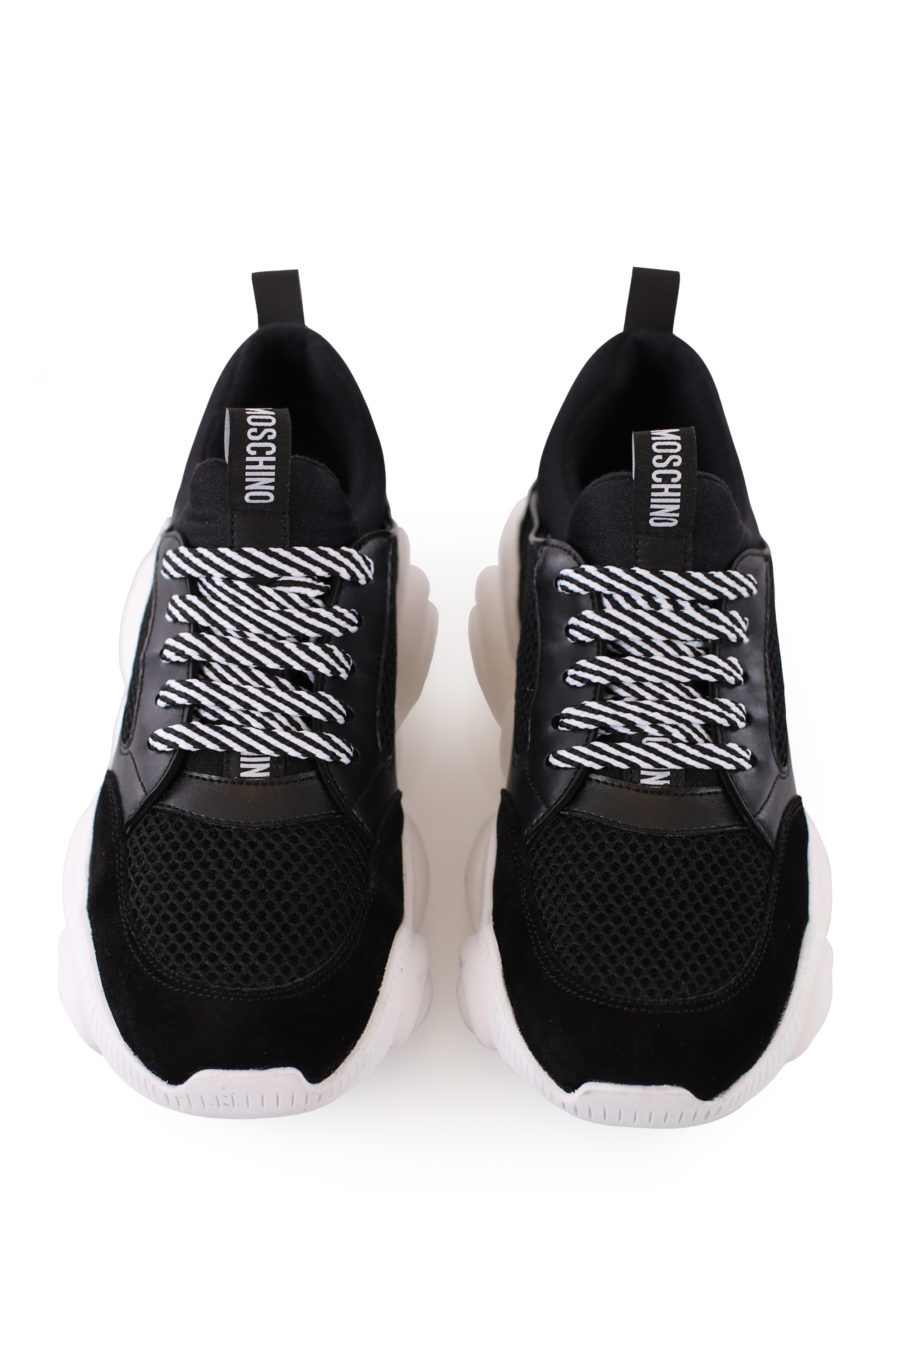 Zapatillas "Teddy" de color negro con suela blanca - IMG 9003